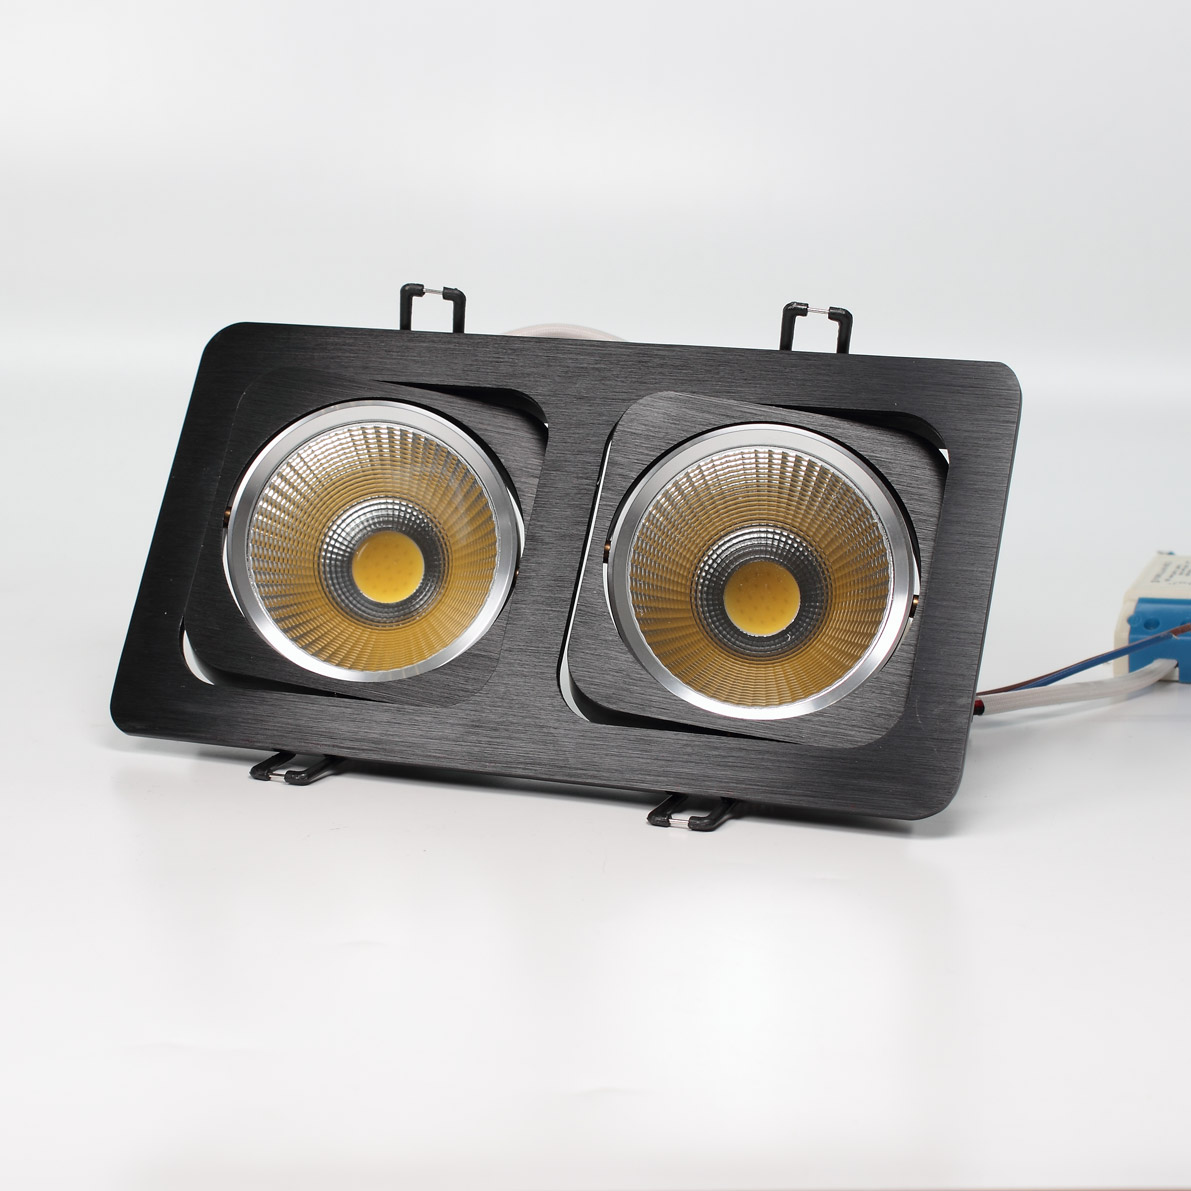 Светодиодные светильники Светодиодный светильник встраиваемый 120.1 series black housing BW136 (20W,220V,day white)